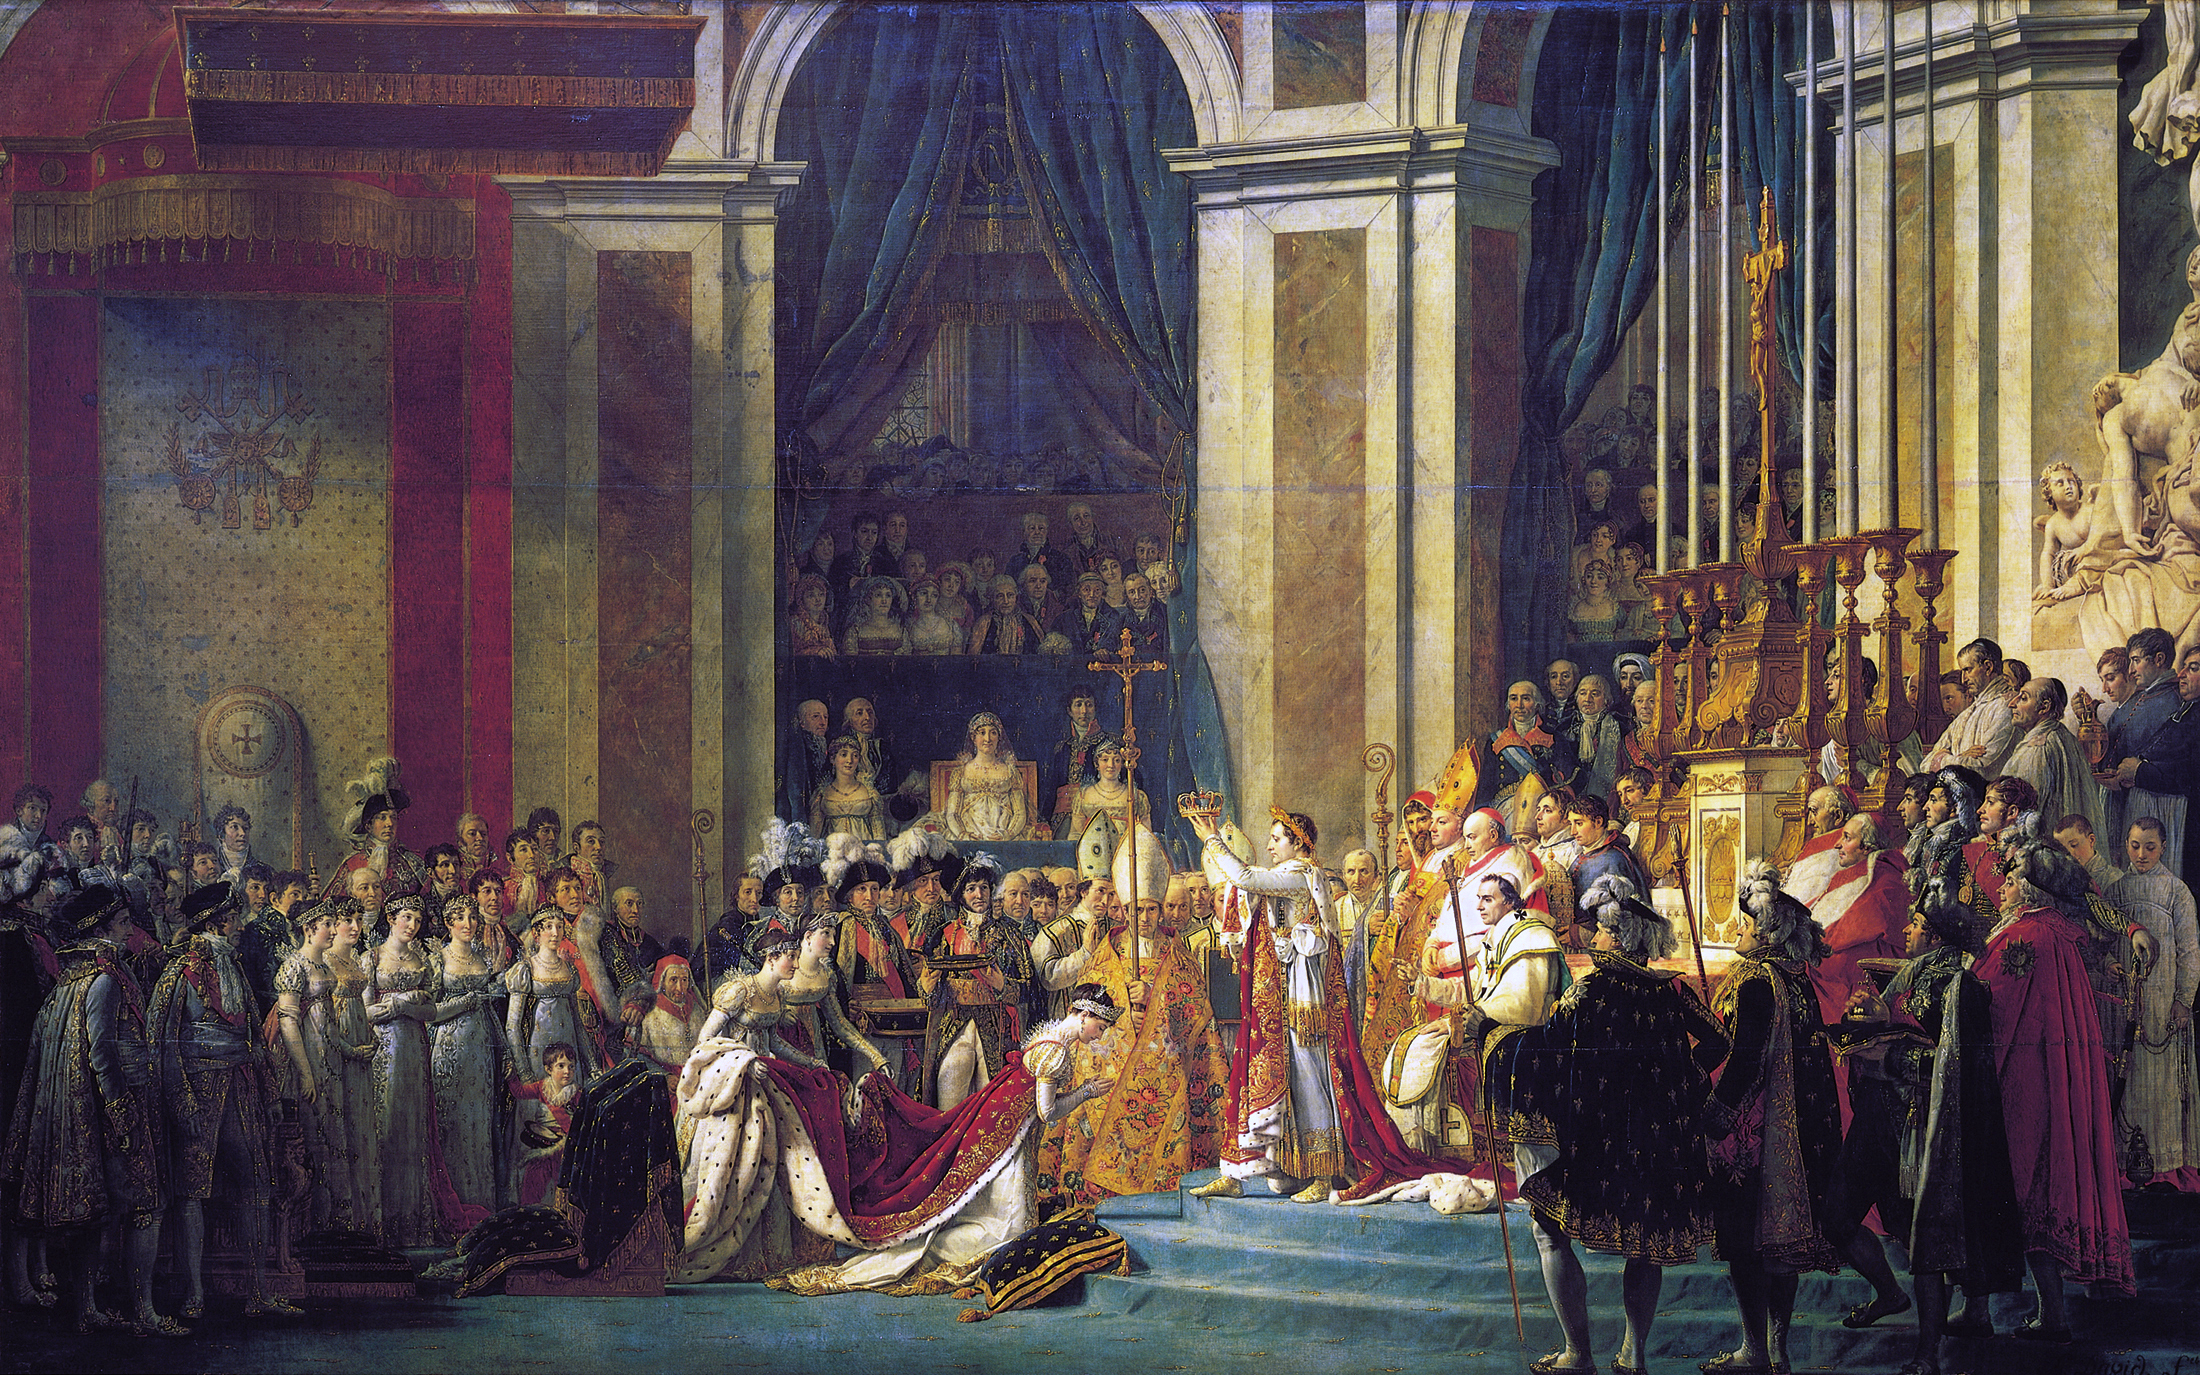 上图：法国大革命画家雅克-路易·大卫（Jacques-Louis David）1807年的油画作品《拿破仑加冕典礼 The Coronation of Napoleon》，描绘1804年12月巴黎圣母院的拿破仑加冕大典。在教宗庇护七世的旁观下，拿破仑自己将皇冠戴到头上，然后加冕妻子为皇后。1804年11月，昔日追求「自由、平等、博爱」，投票把善良的国王路易十六推上断头台的法国革命群众，又通过公民投票把法兰西共和国改为法兰西帝国，拥戴拿破仑（Napoleon）为皇帝。而昔日的革命者雅克-路易·大卫也放弃了革命信仰，摇身一变成为宫廷画师，为拿破仑皇帝画了许多著名的画像，包括《跨越阿尔卑斯山圣伯纳隘道的拿破仑 Napoleon Crossing the Alps》。法国人为了追求自由、民主、「公义」的革命，结果不过是给自己换了一个皇帝。相似的一幕此后在世界各国的政治舞台上不断重演，不住地让人反思什么才是「公义」的标准。